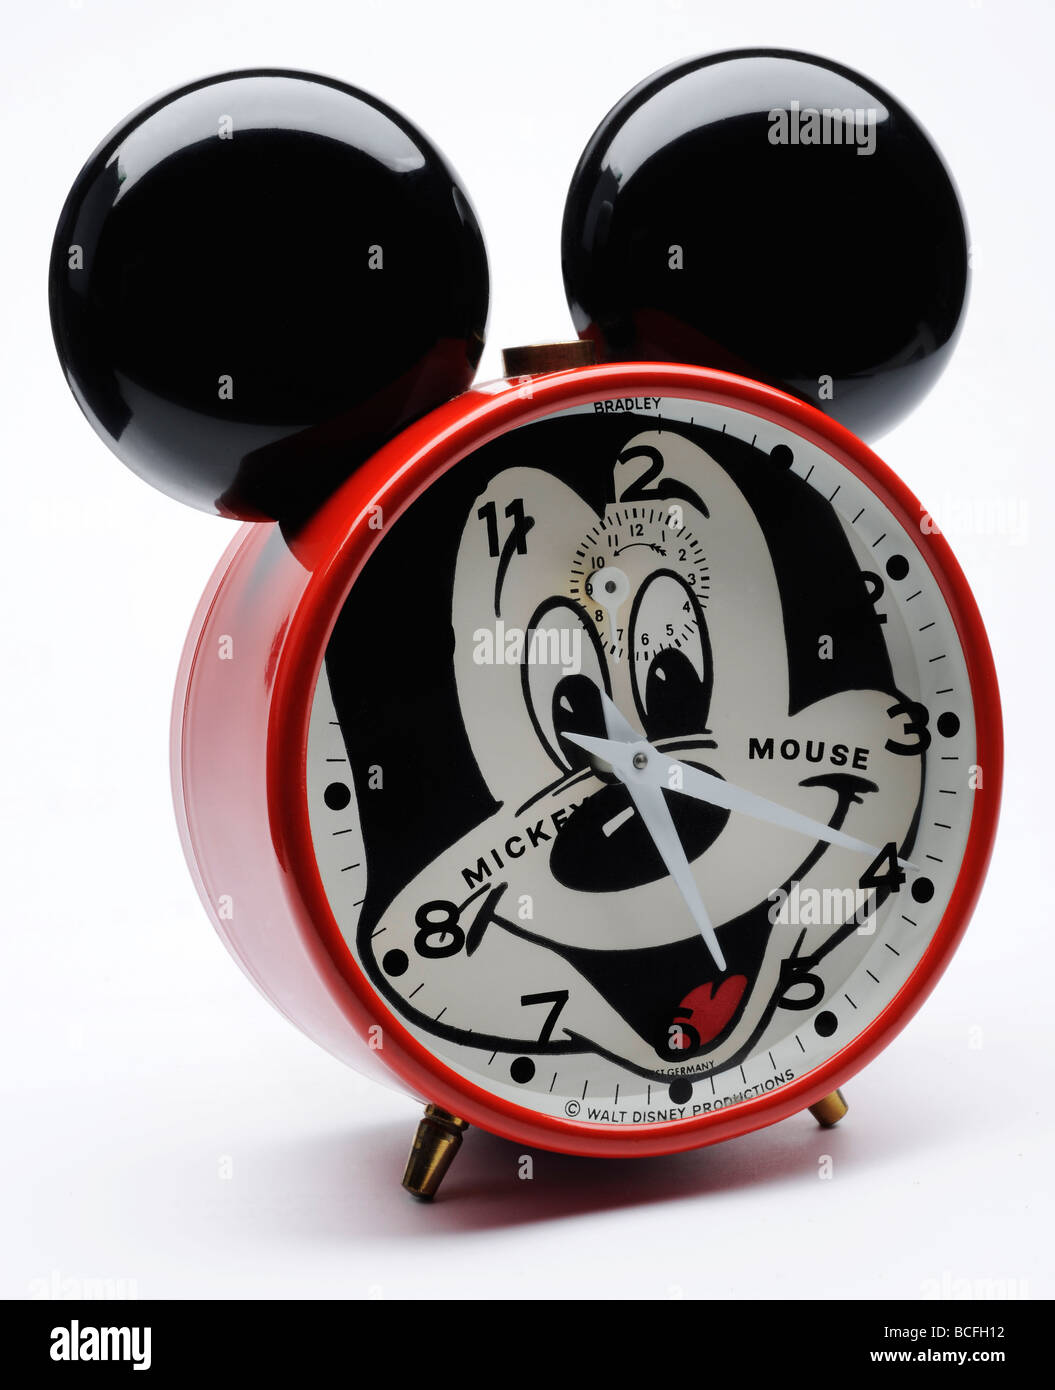 Mickey Mouse reloj alarma Foto de stock